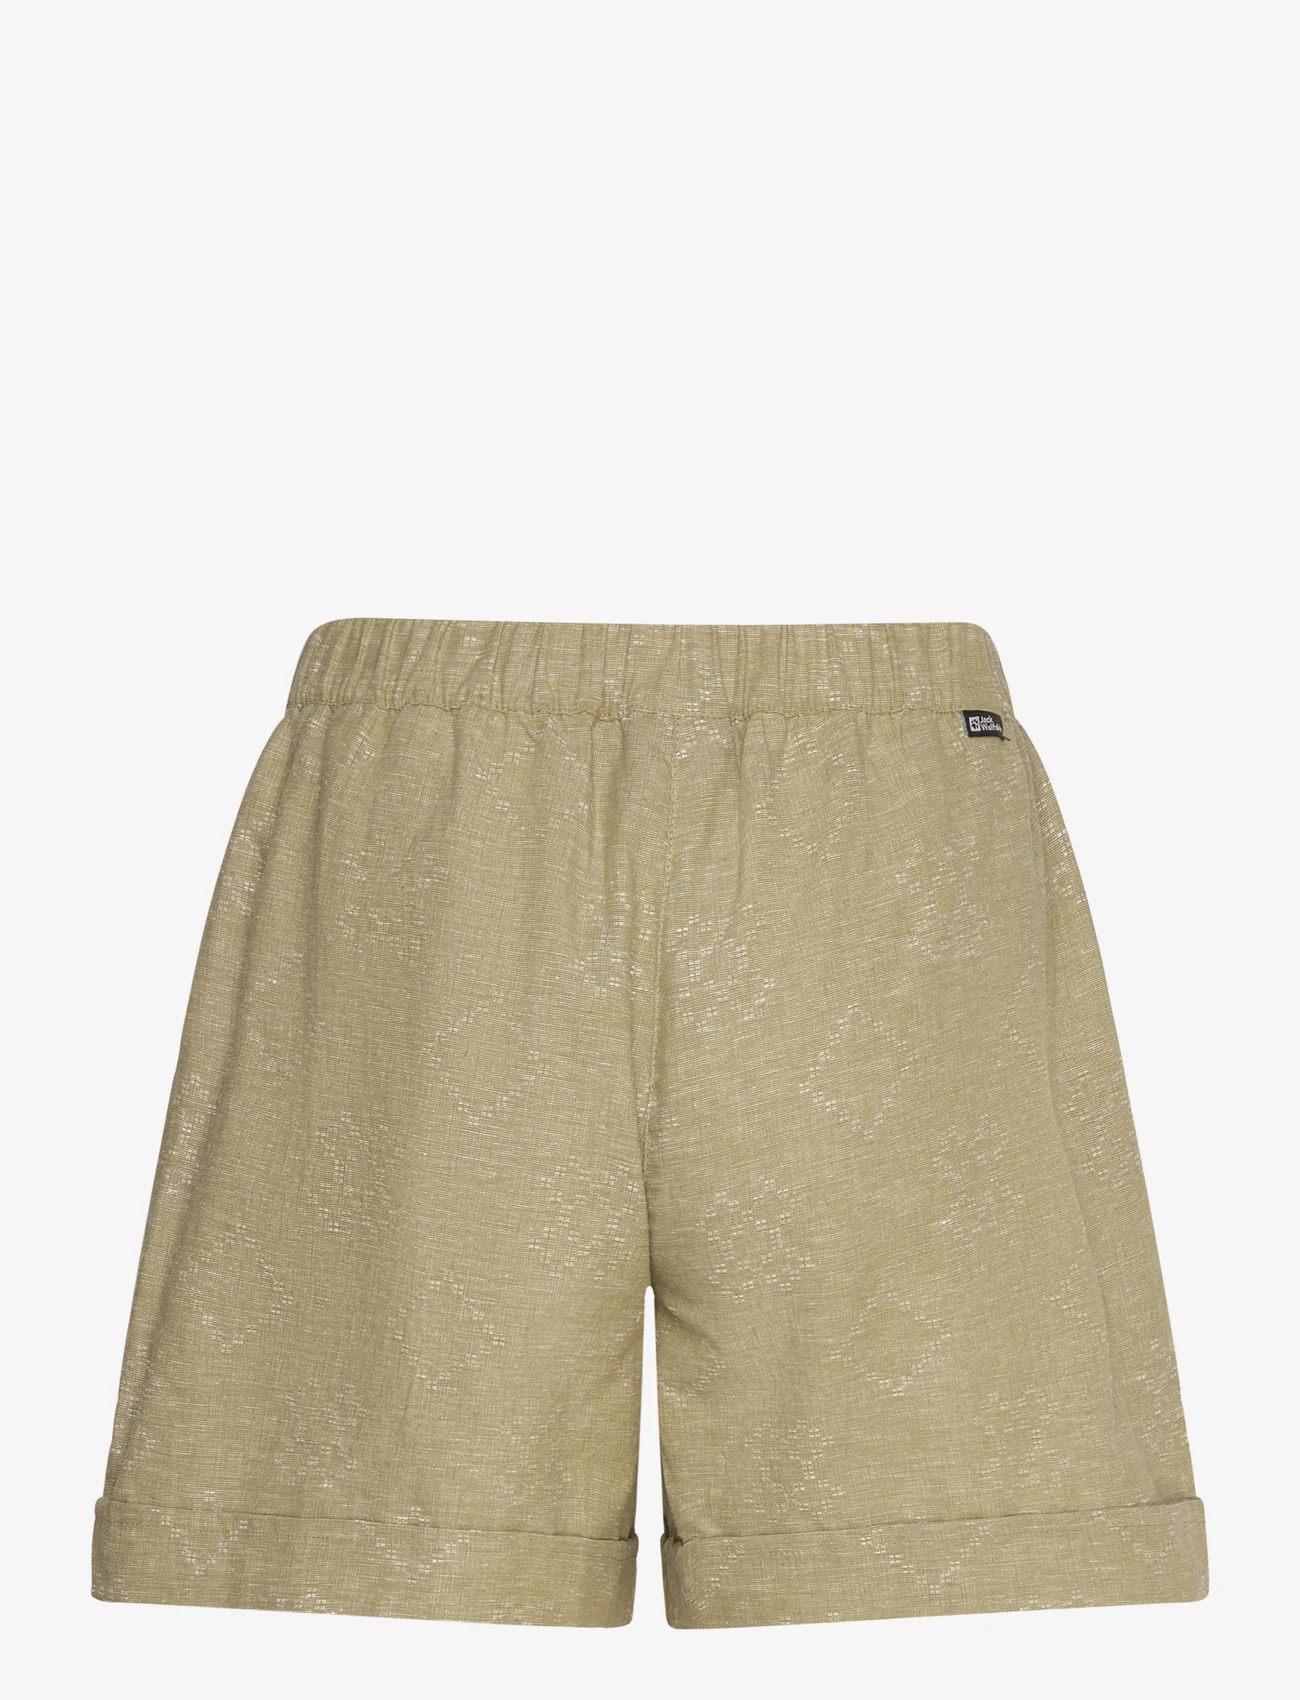 Jack Wolfskin - KARANA SHORTS W - casual shorts - bay leaf - 1